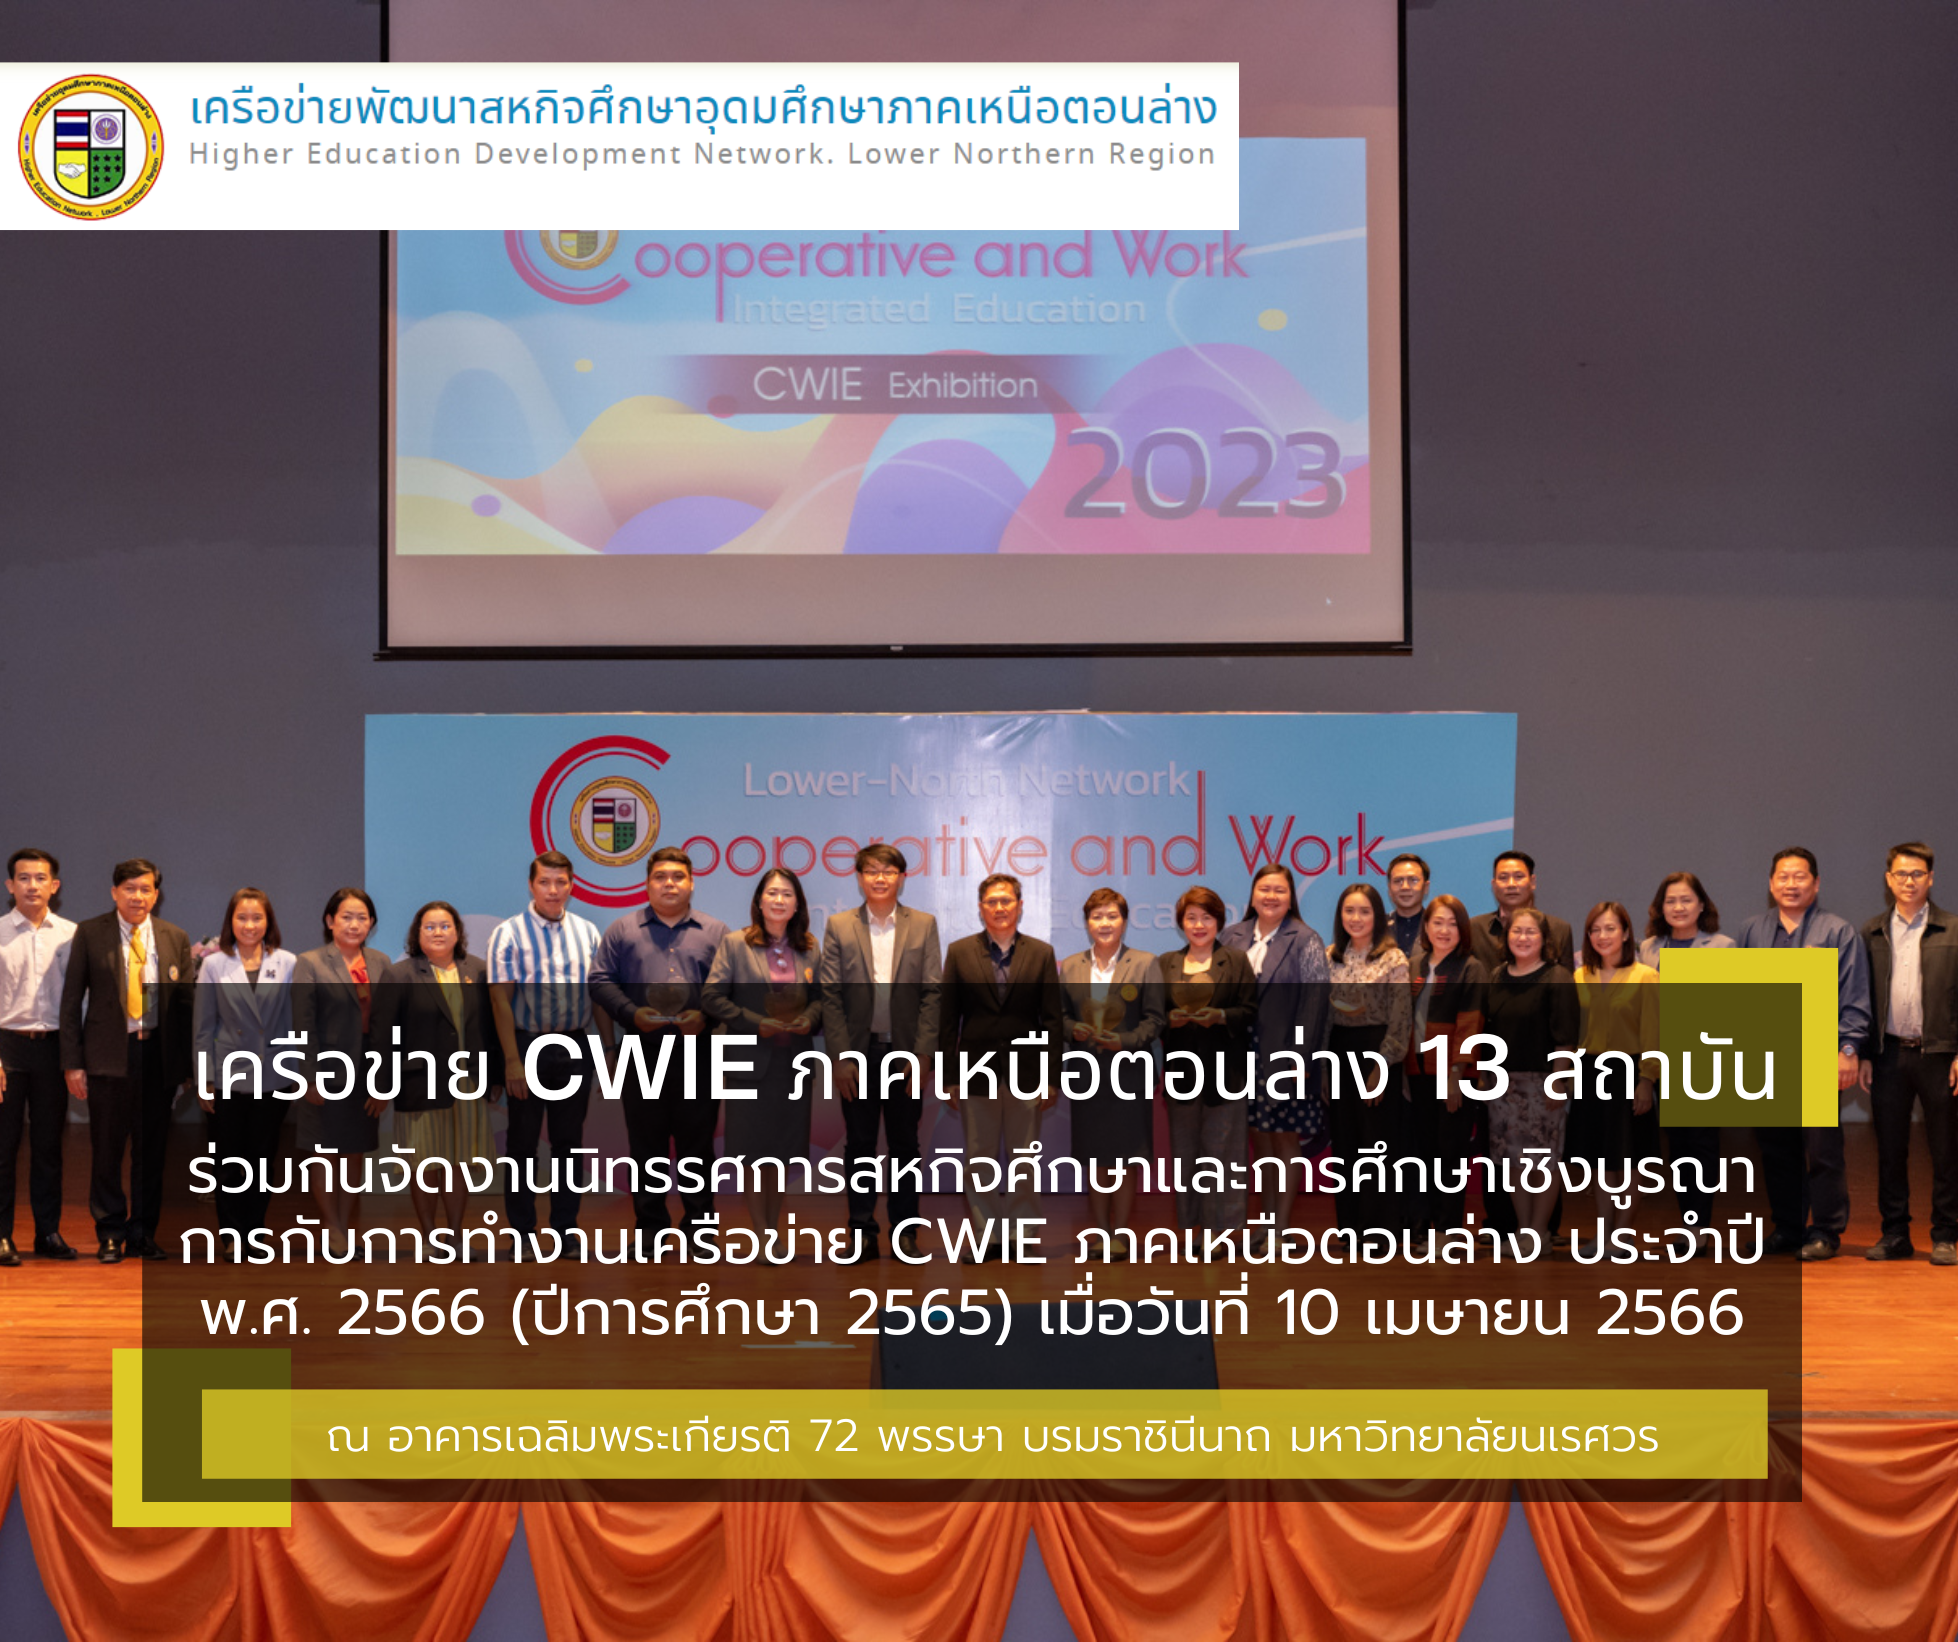 เครือข่าย CWIE ภาคเหนือตอนล่าง 13 สถาบัน ร่วมกันจัดงานนิทรรศการสหกิจศึกษาและการศึกษาเชิงบูรณาการกับการทำงานเครือข่าย CWIE ภาคเหนือตอนล่าง ประจำปี พ.ศ. 2566 เมื่อวันที่ 10 เมษายน 2566